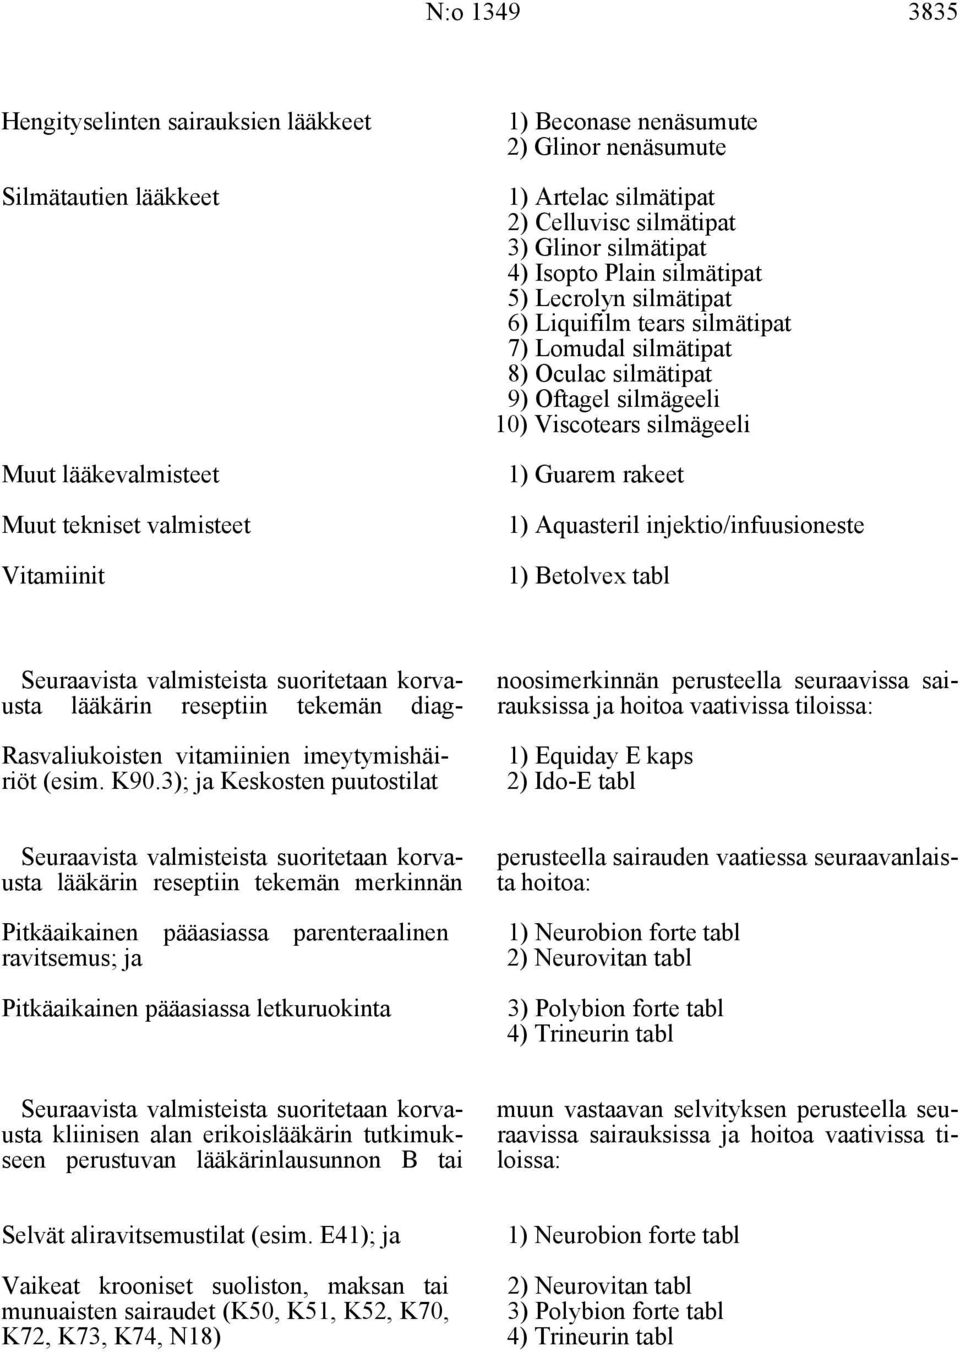 Viscotears silmägeeli 1) Guarem rakeet 1) Aquasteril injektio/infuusioneste 1) Betolvex tabl Rasvaliukoisten vitamiinien imeytymishäiriöt (esim. K90.